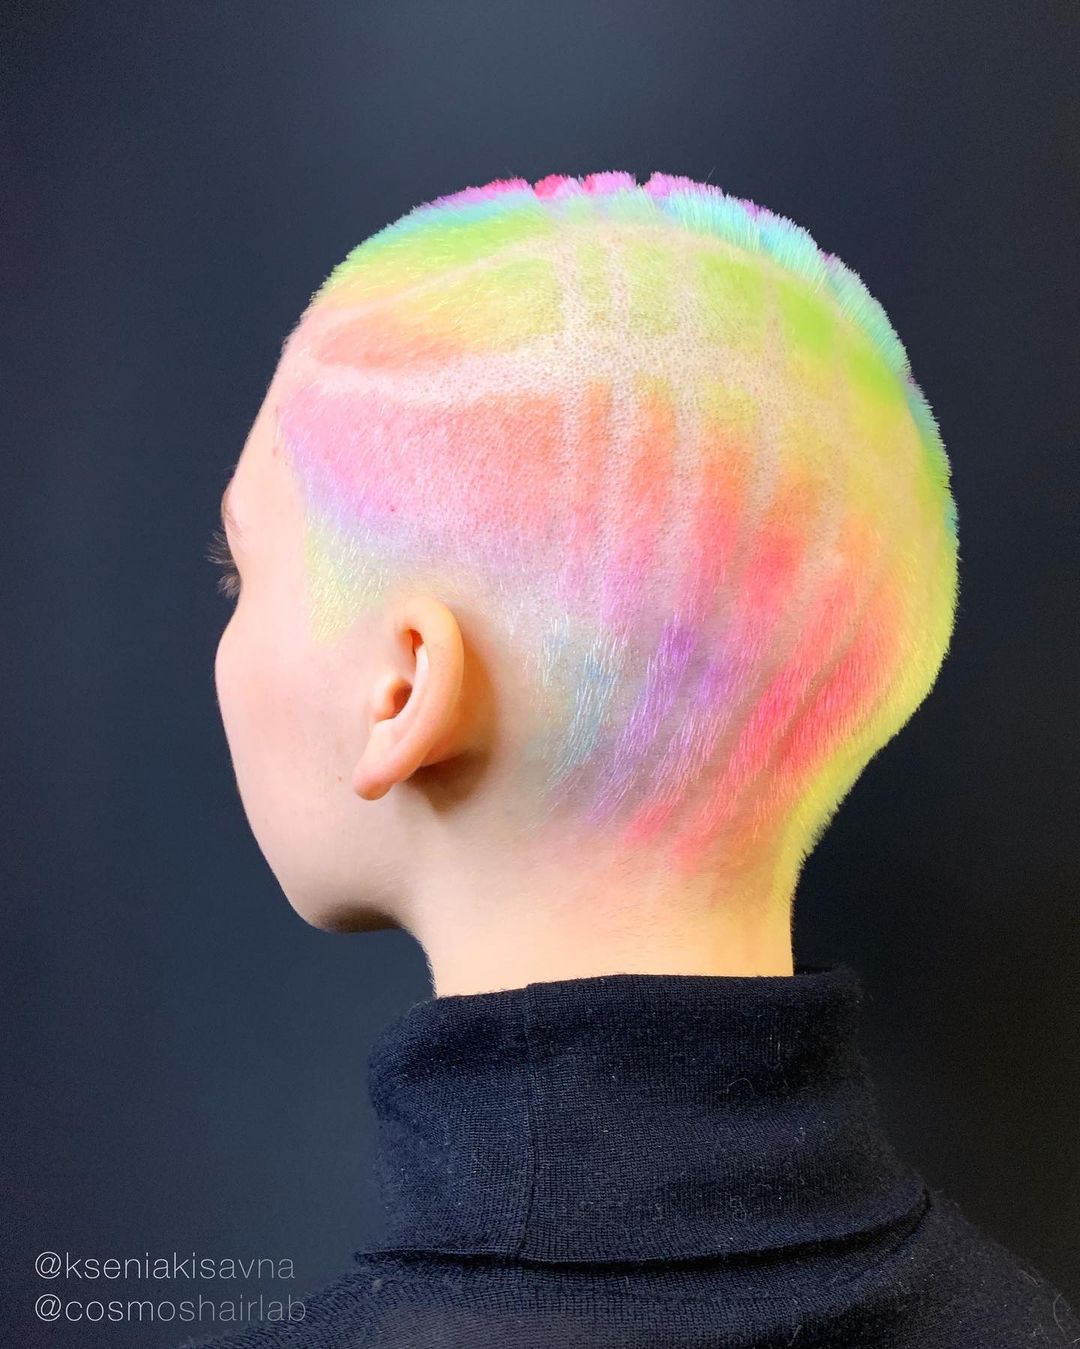 Ksenia sẽ sáng tạo và sắp xếp màu sắc dựa trên kiểu tóc của khách hàng. Đối với tóc dài cô sẽ nhuộm kiểu highlight, nhưng đối với những kiểu tóc ngắn hơn cô sẽ nhuộm phủ toàn phần.